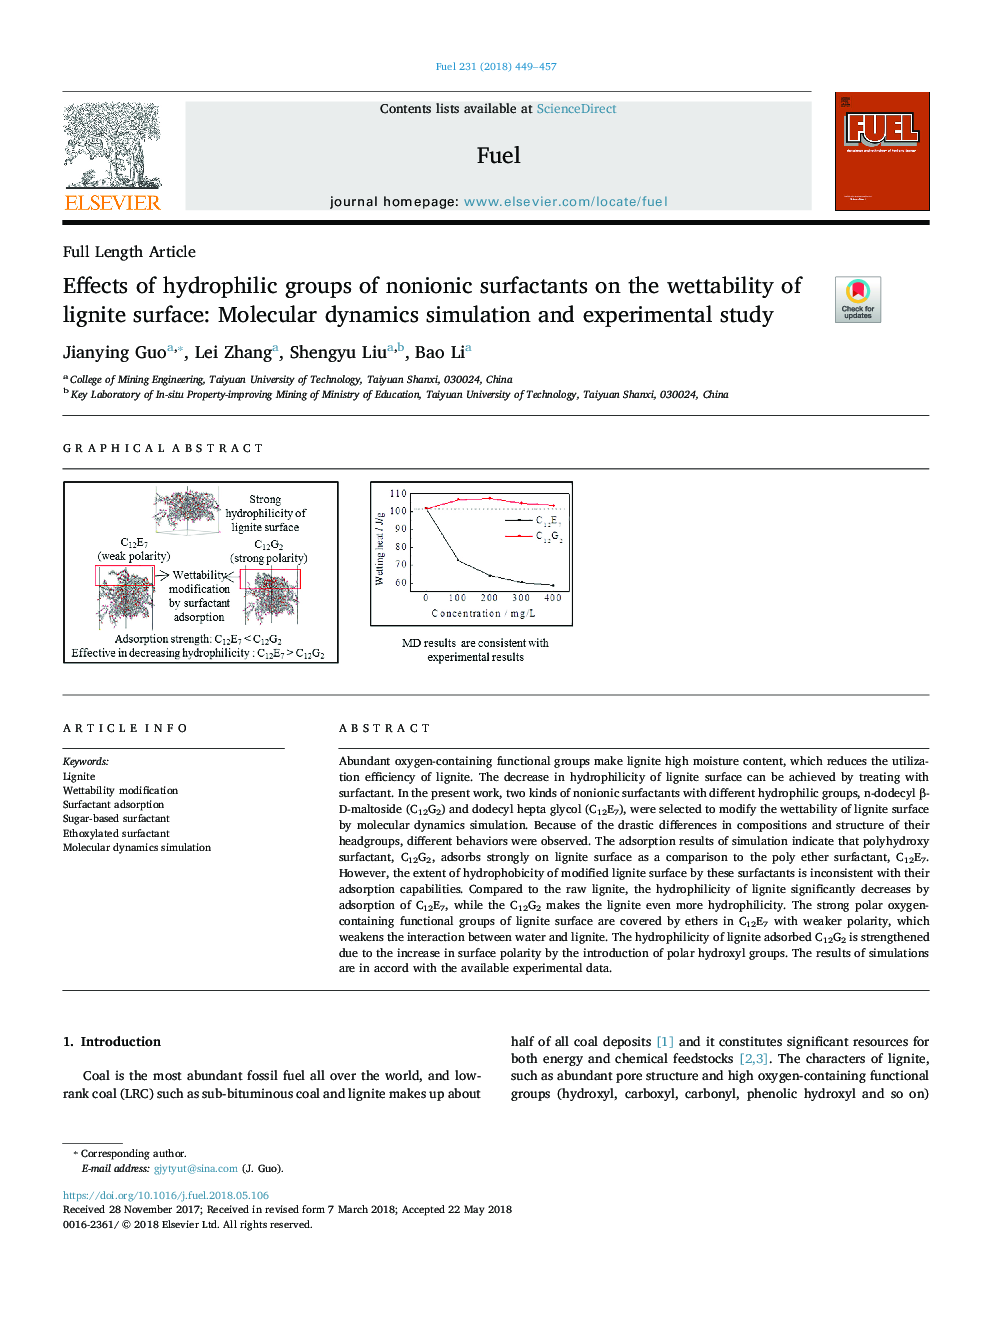 اثرات گروه های هیدروفیلی سورفکتانت های غیر آلی بر تجمع سطح لجن: شبیه سازی دینامیکی مولکولی و مطالعه تجربی 